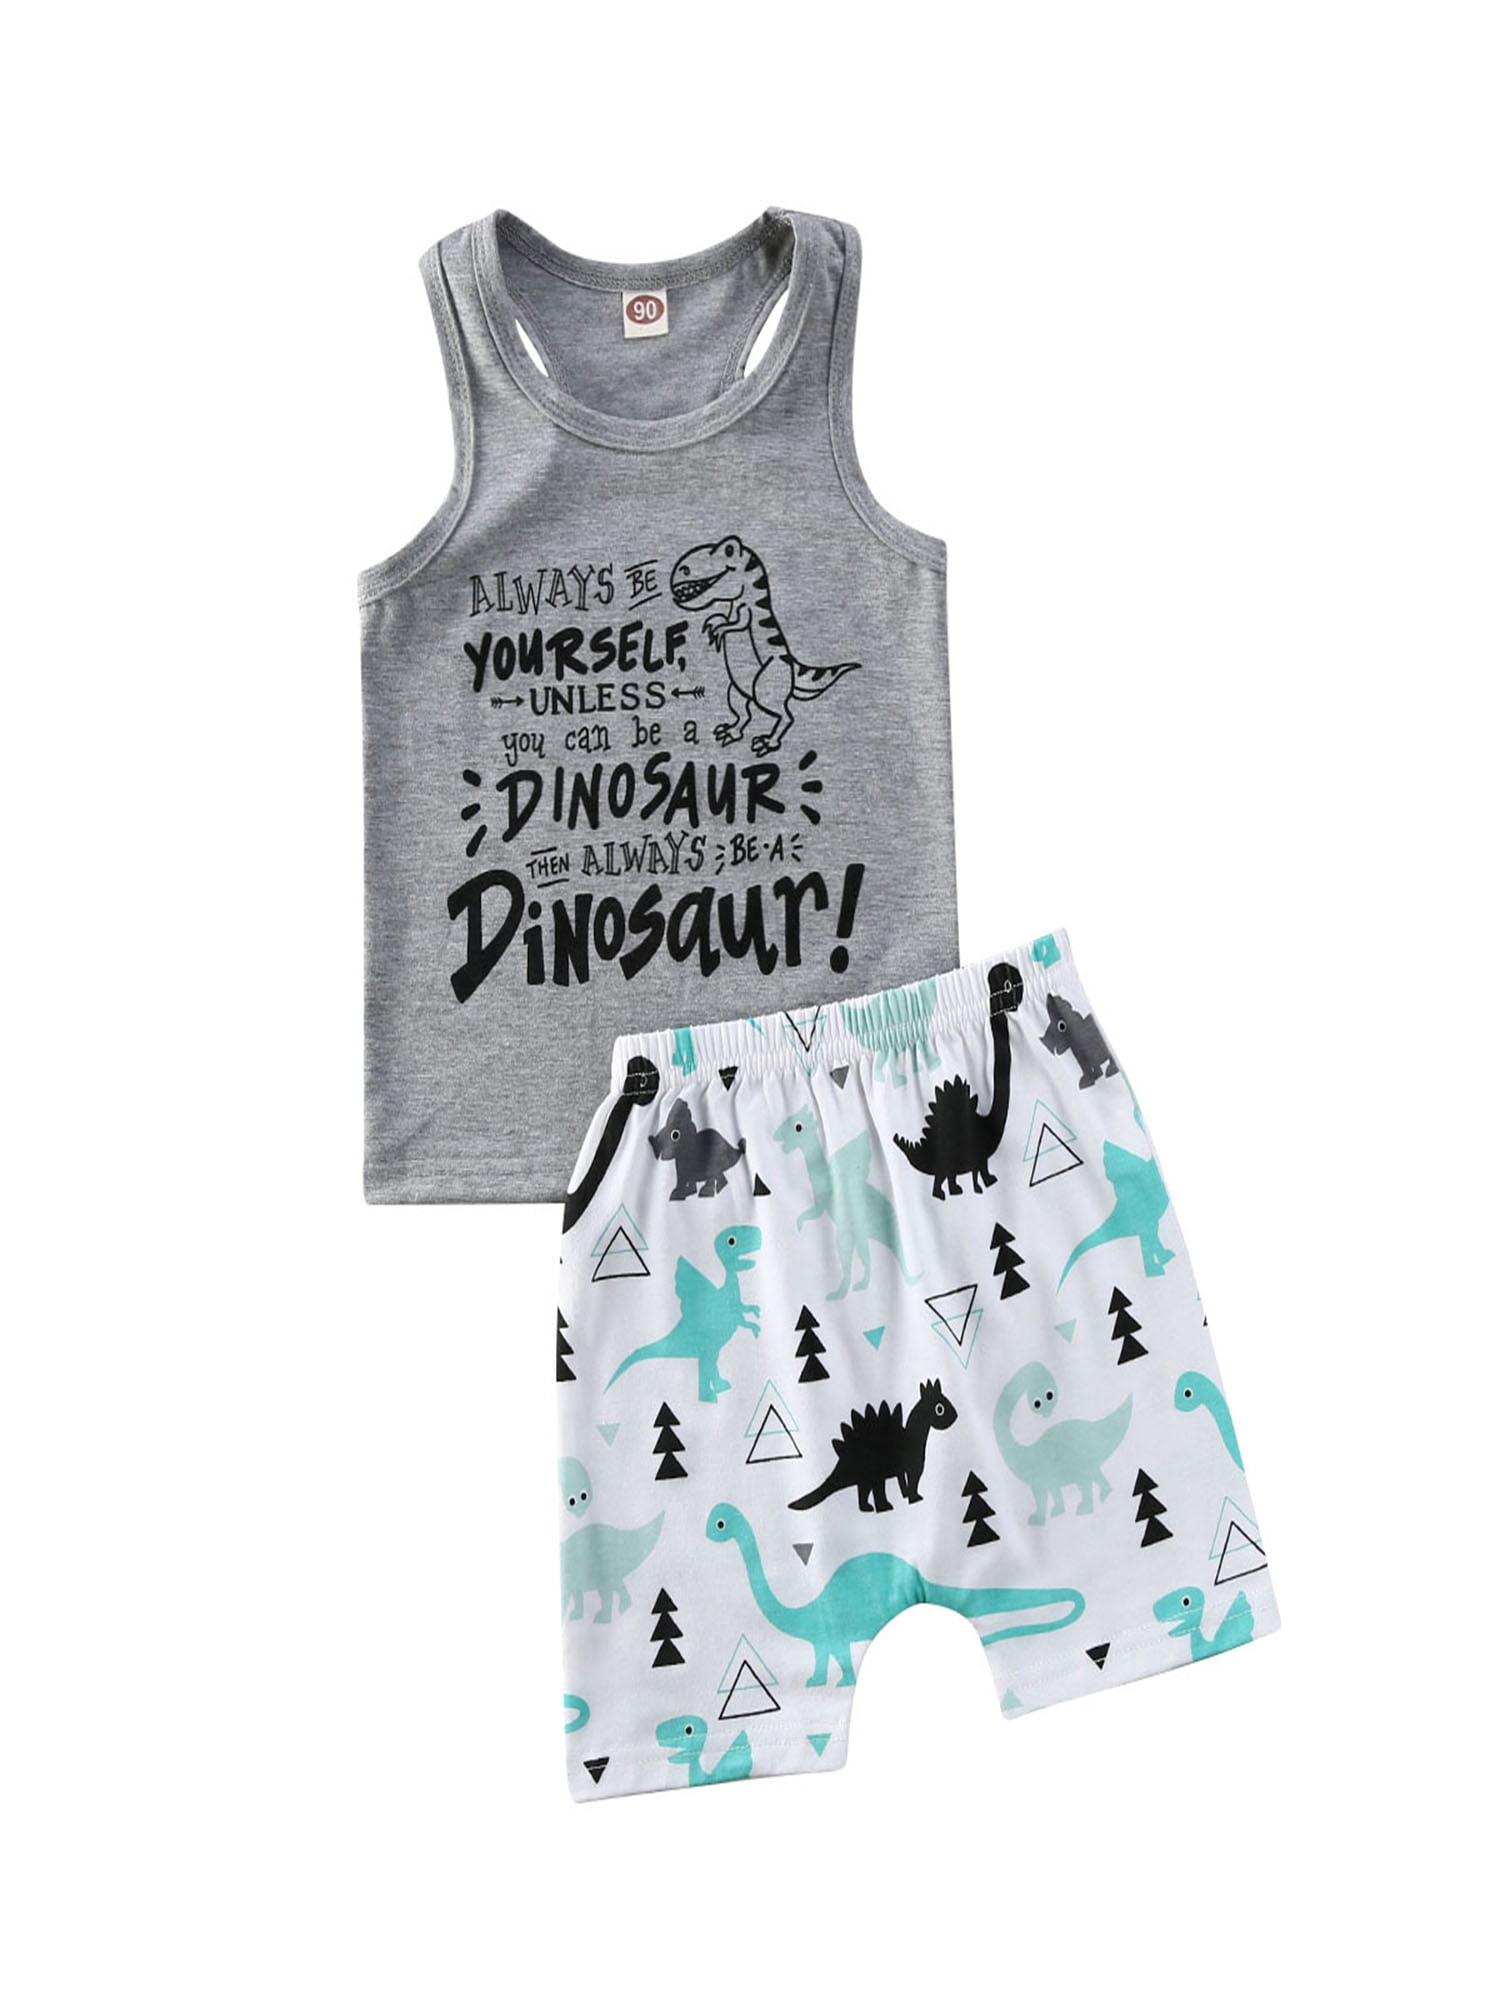 Toddler Baby Boys Summer Outfits Clothes Sets Dinosaur T-Shirt Tops+Shorts Pants 